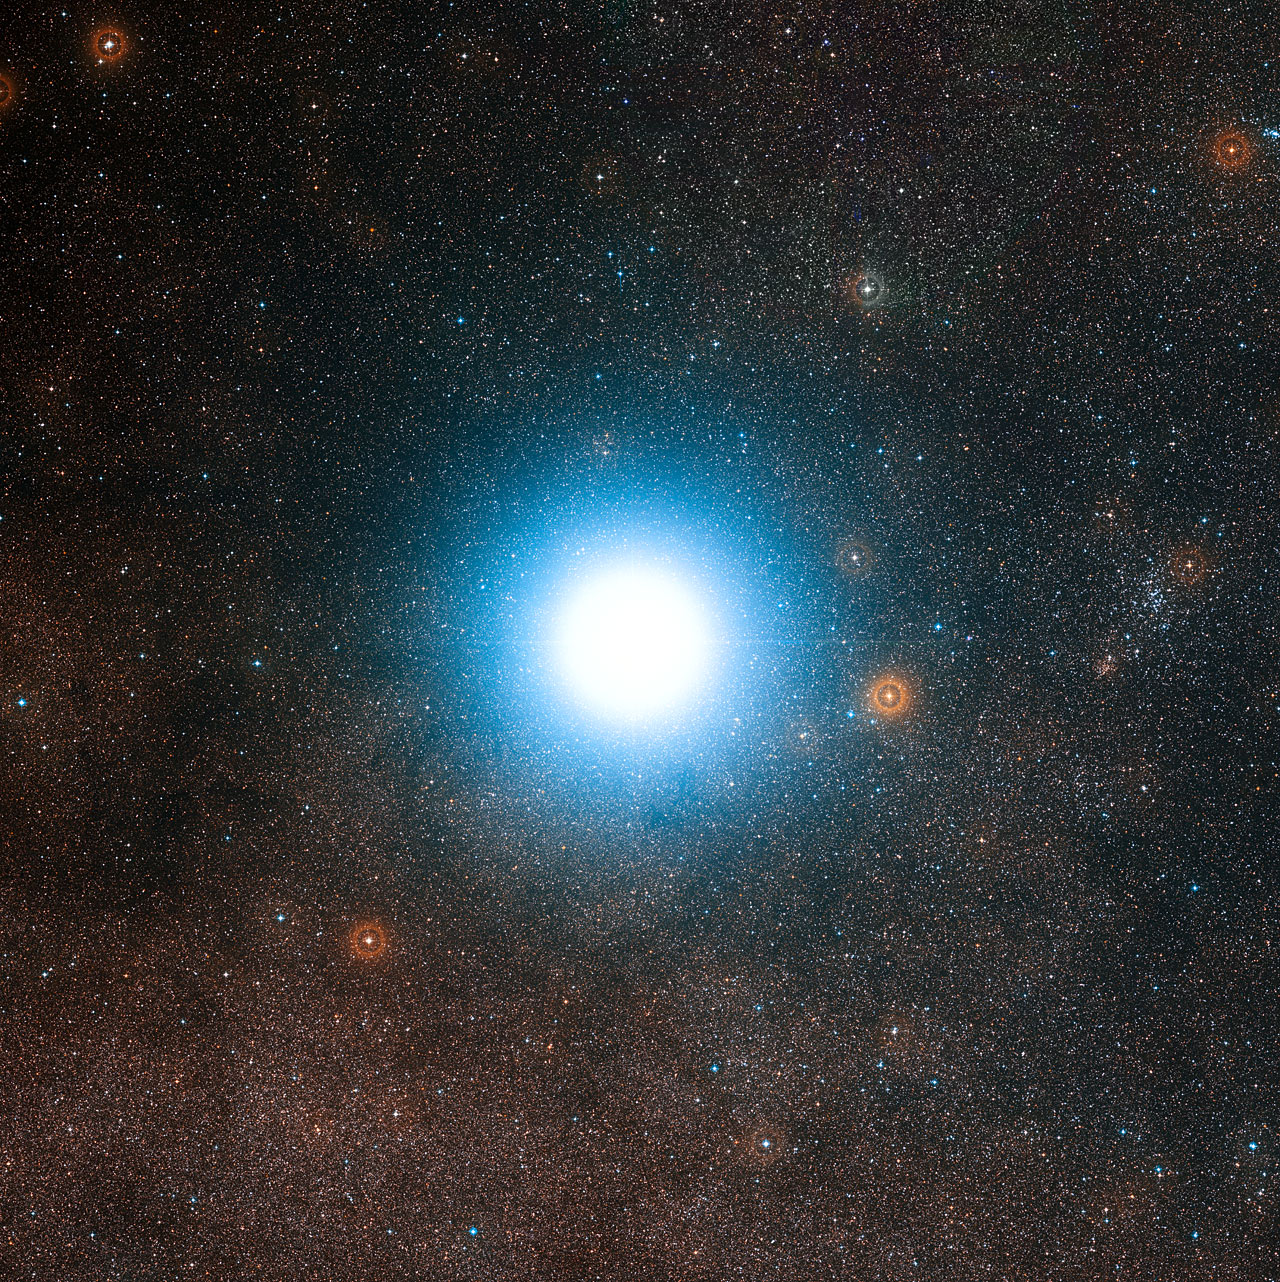 Alfa Kentaura patří k nejbližším hvězdám ke Slunci. Zároveň je jednou z mála, které nejsou červenými trpaslíky. Objevily se u ní sice náznaky existence planety, ale potřebují ověření. Vůbec není vyloučeno, že u ní mohou být i planety v obyvatelné zón